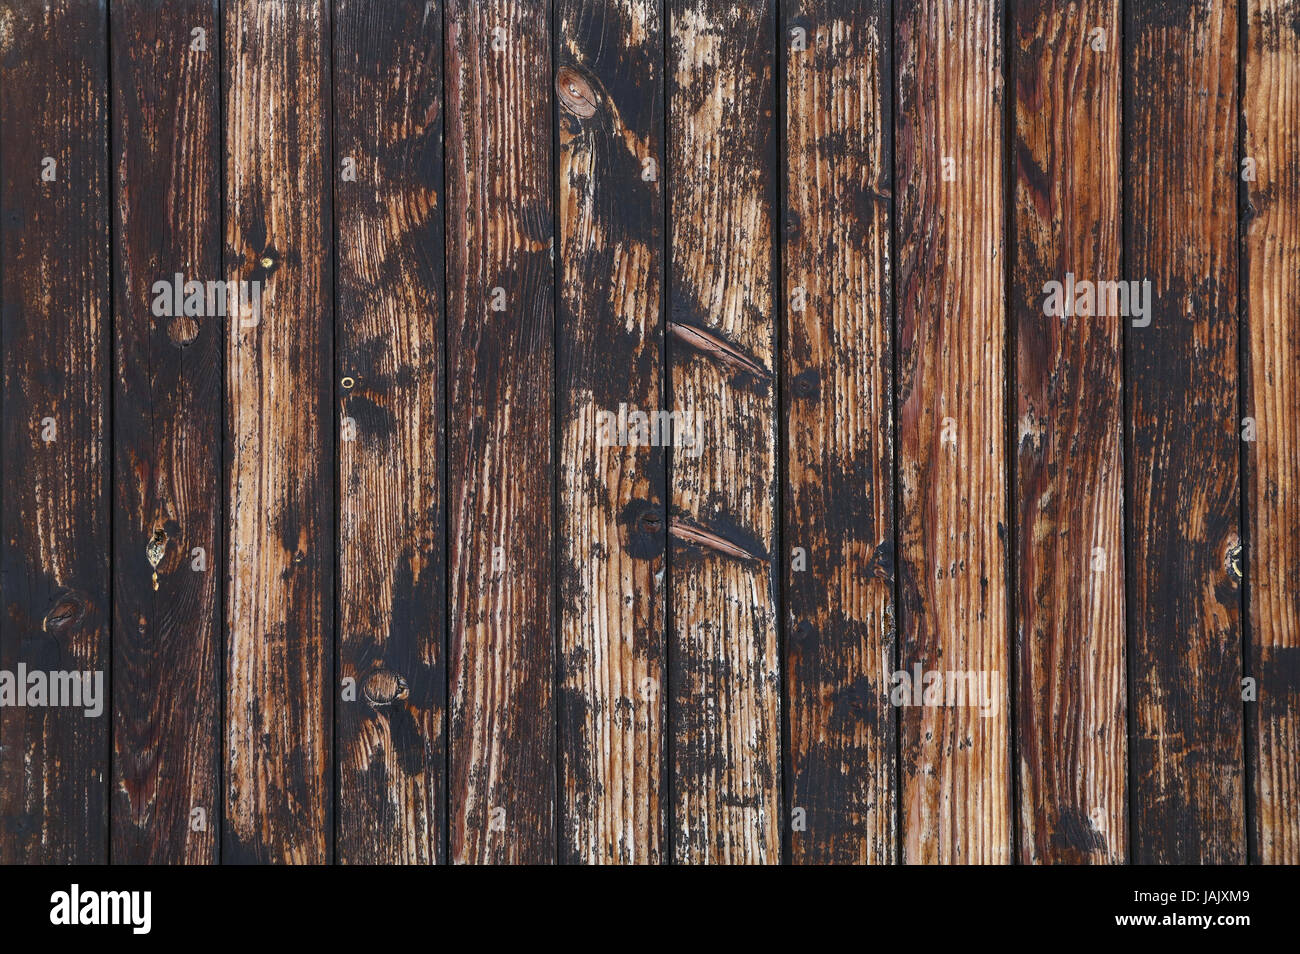 Old vintage grunge de plancher en bois brun et gris foncé sur fond texture planches taches noires et le contraste des rayures légères Banque D'Images